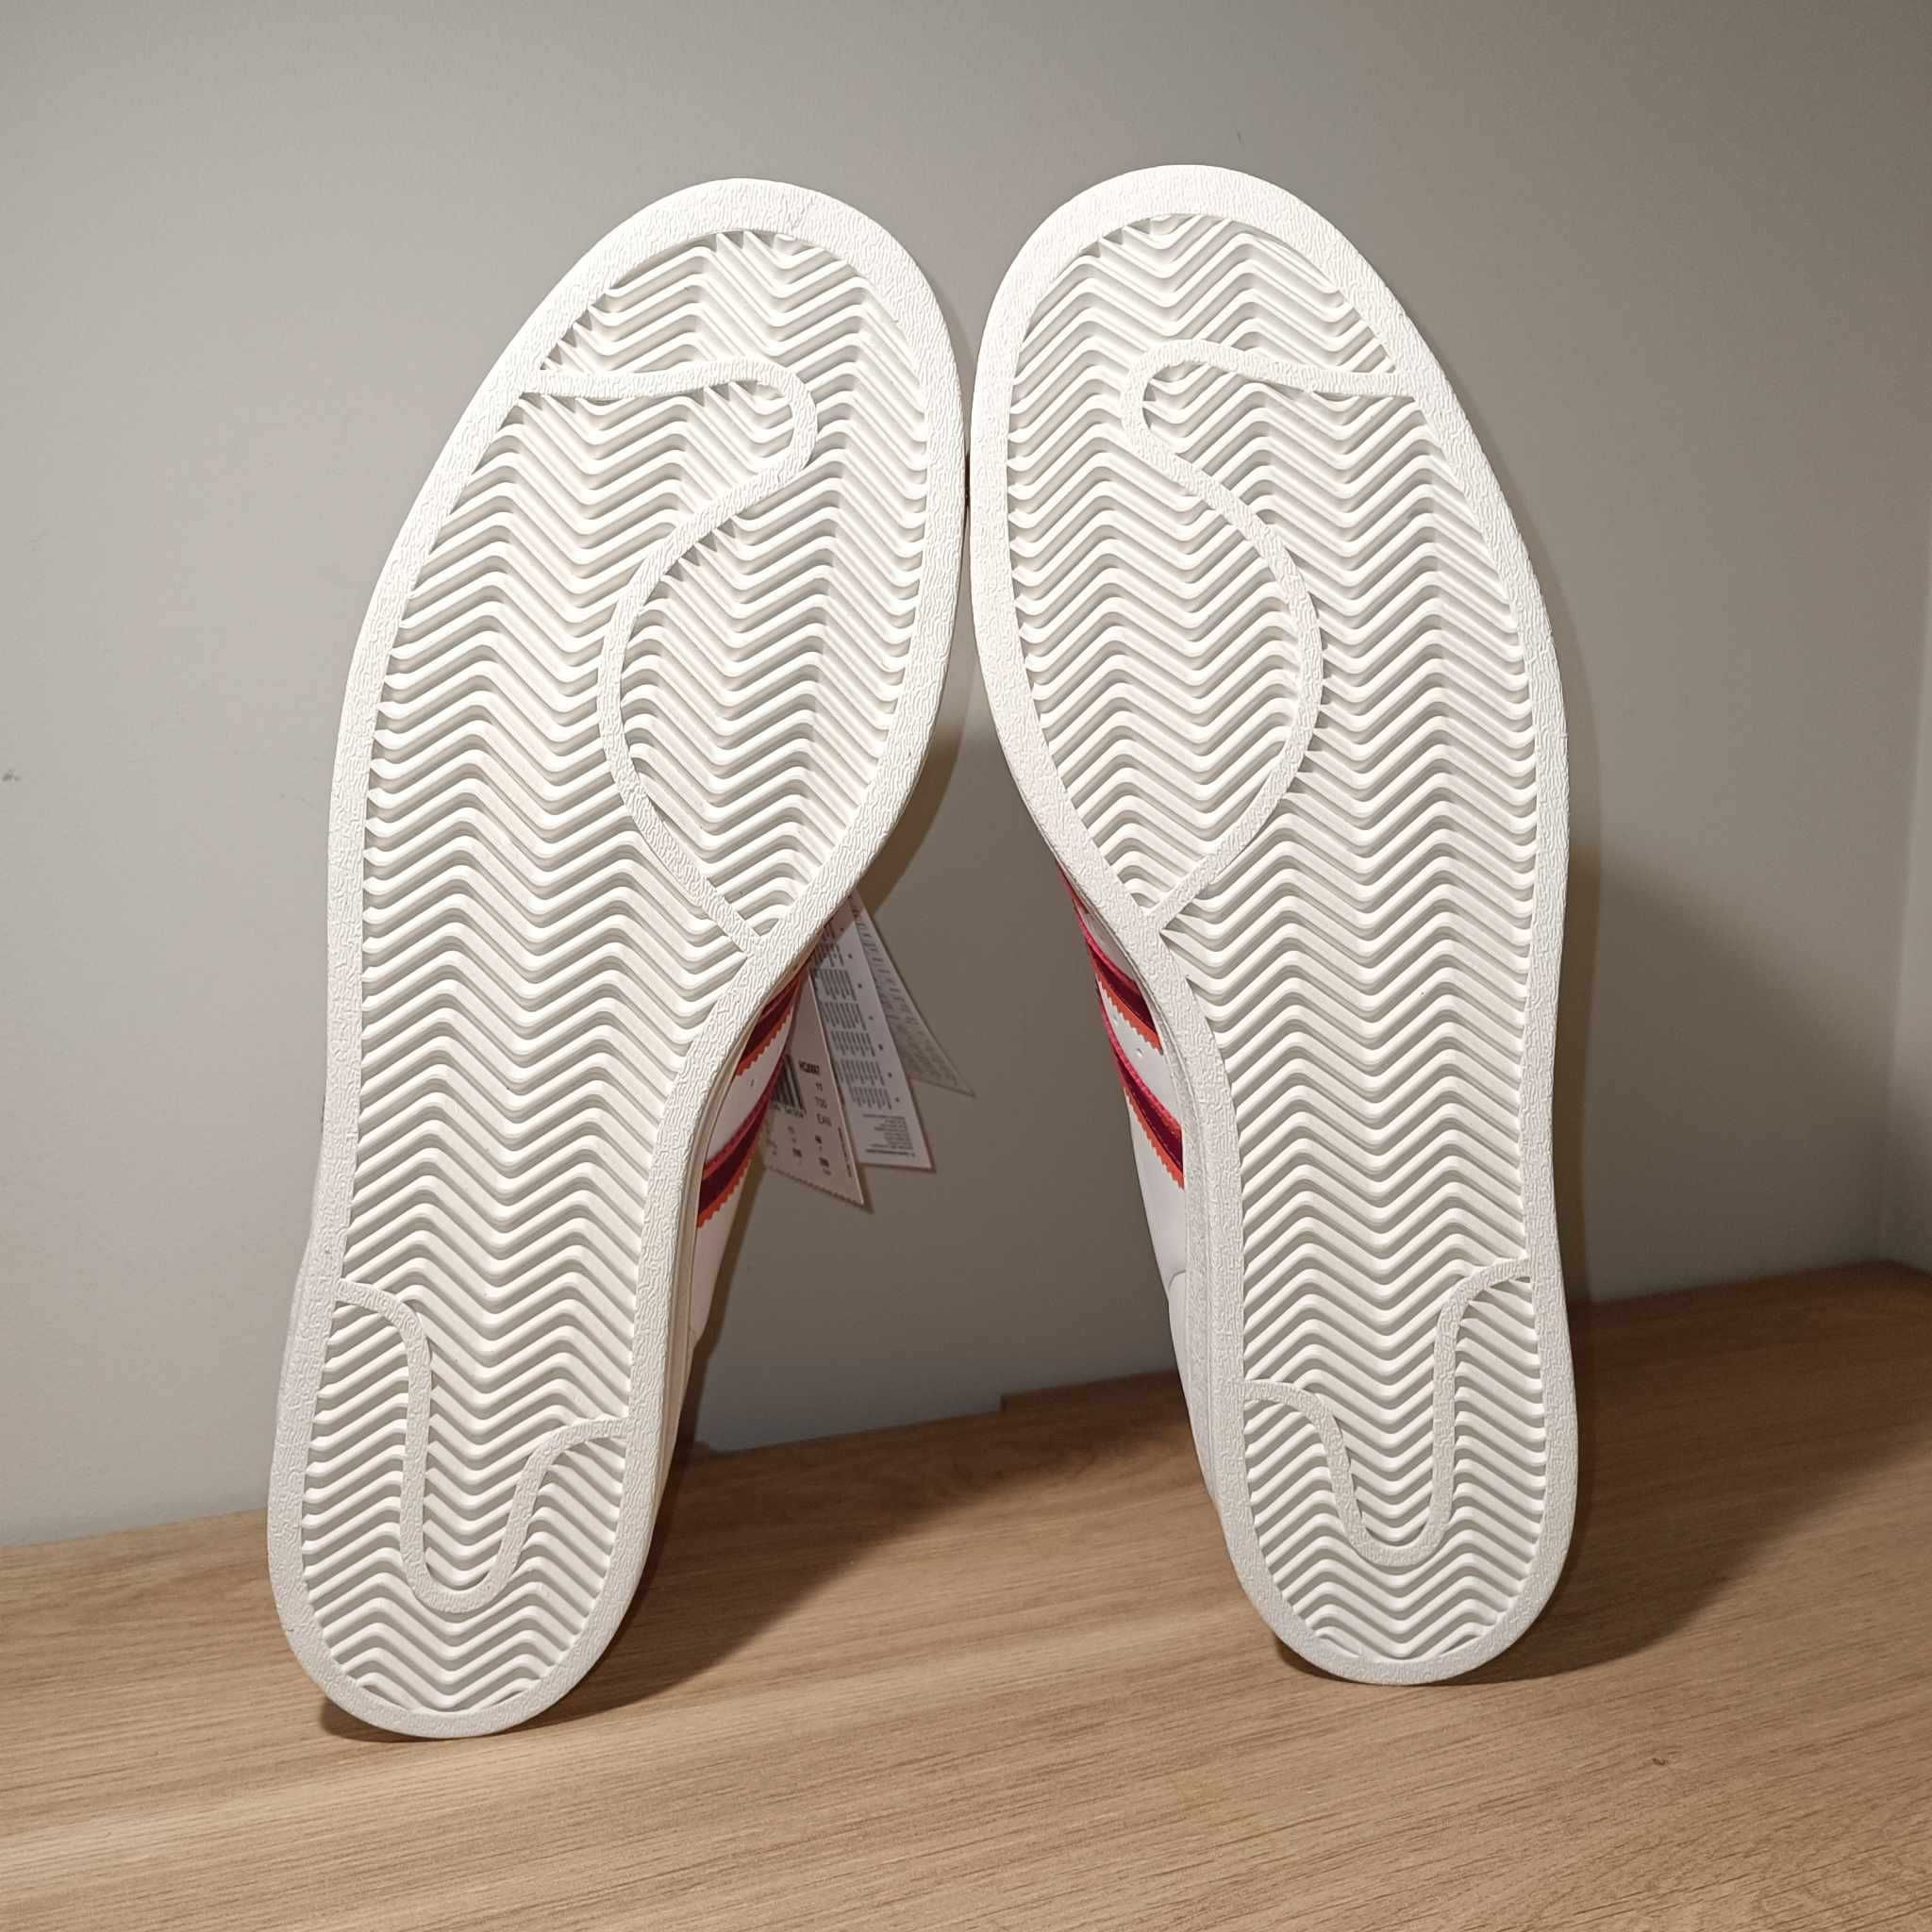 Adidas Superstar Originals r. 46 (29,5 cm) HQ8867